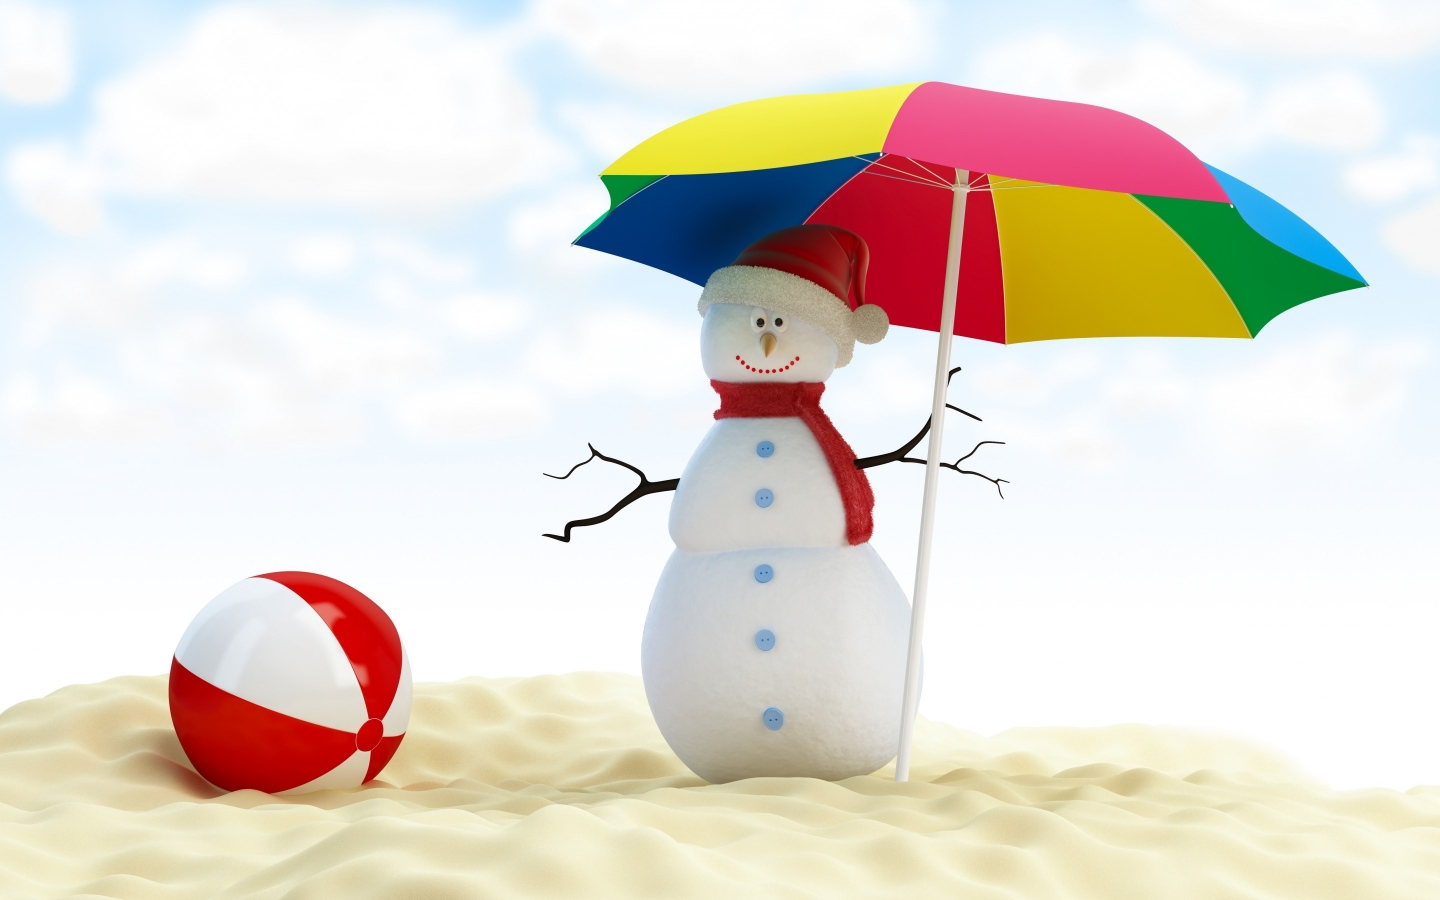 Summer Snowman for 1440 x 900 widescreen resolution